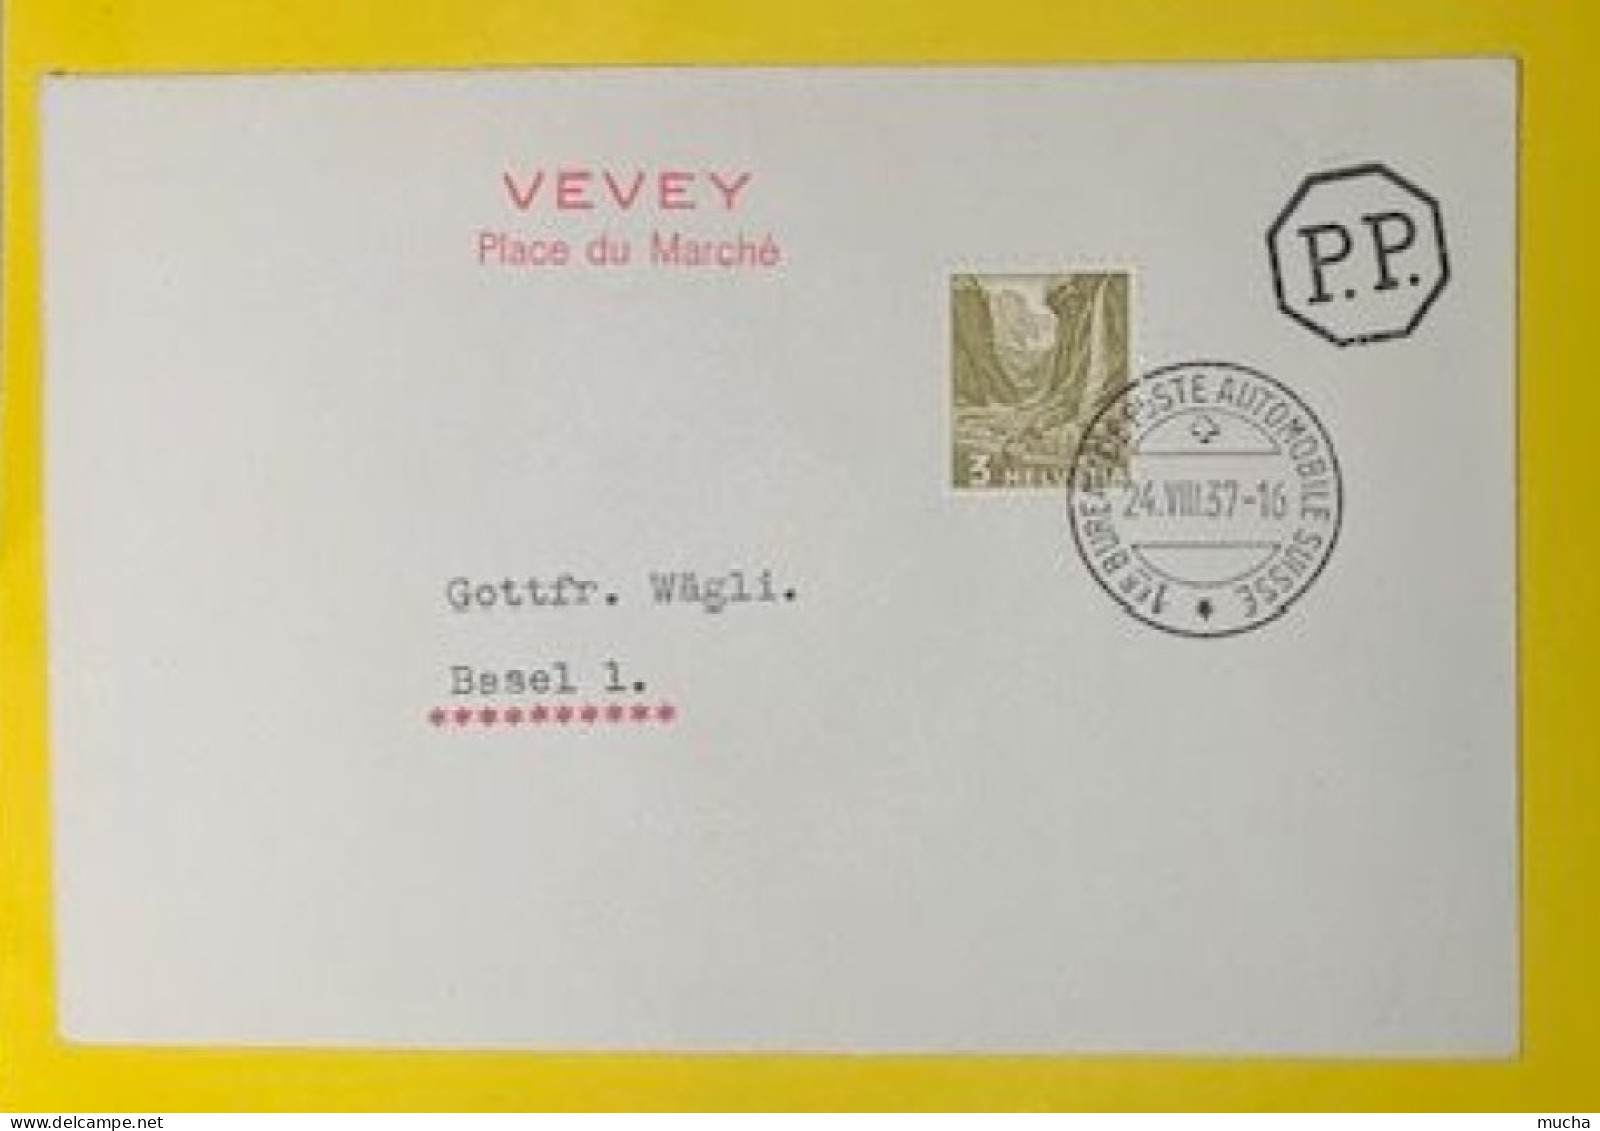 20407 - 1er Bureau De Poste Automobile 24.08.1937 Cachet Rouge Vevey Place Du Marché - Lettres & Documents